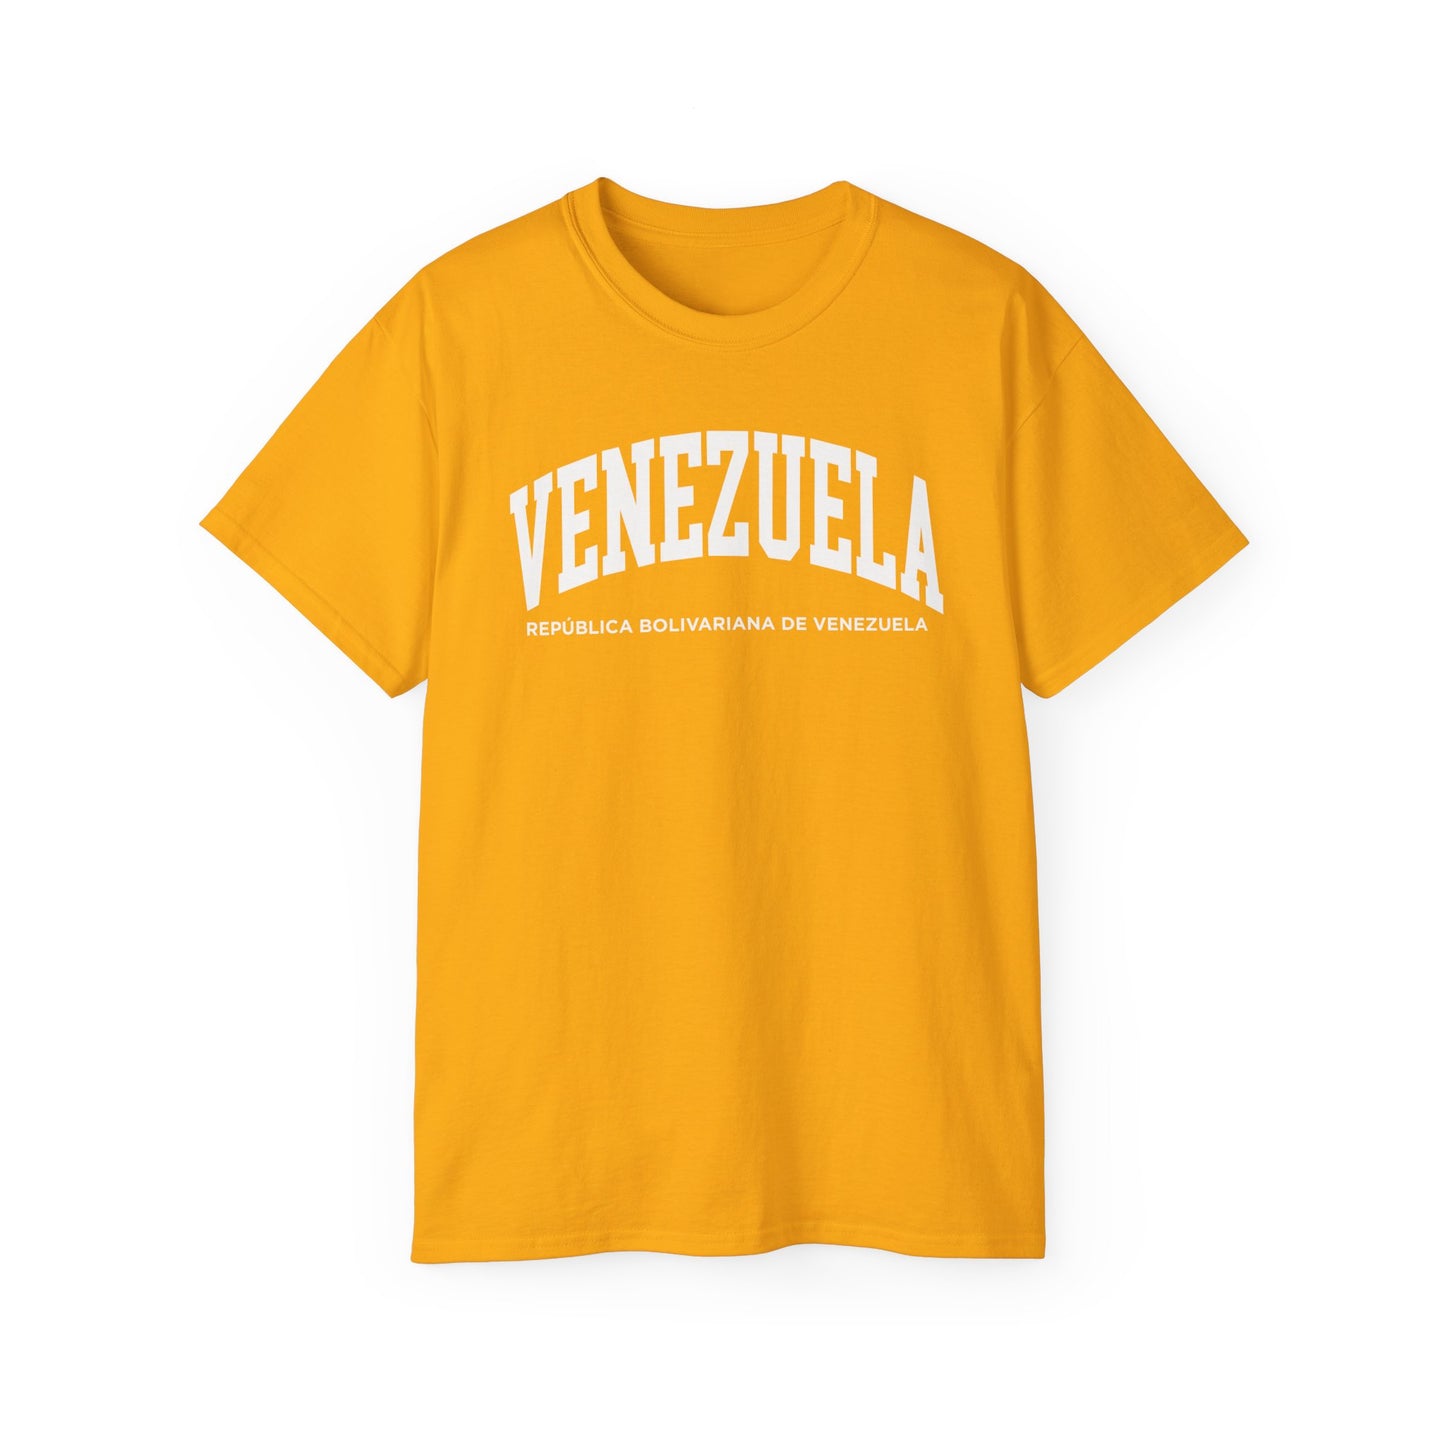 Venezuela Tee